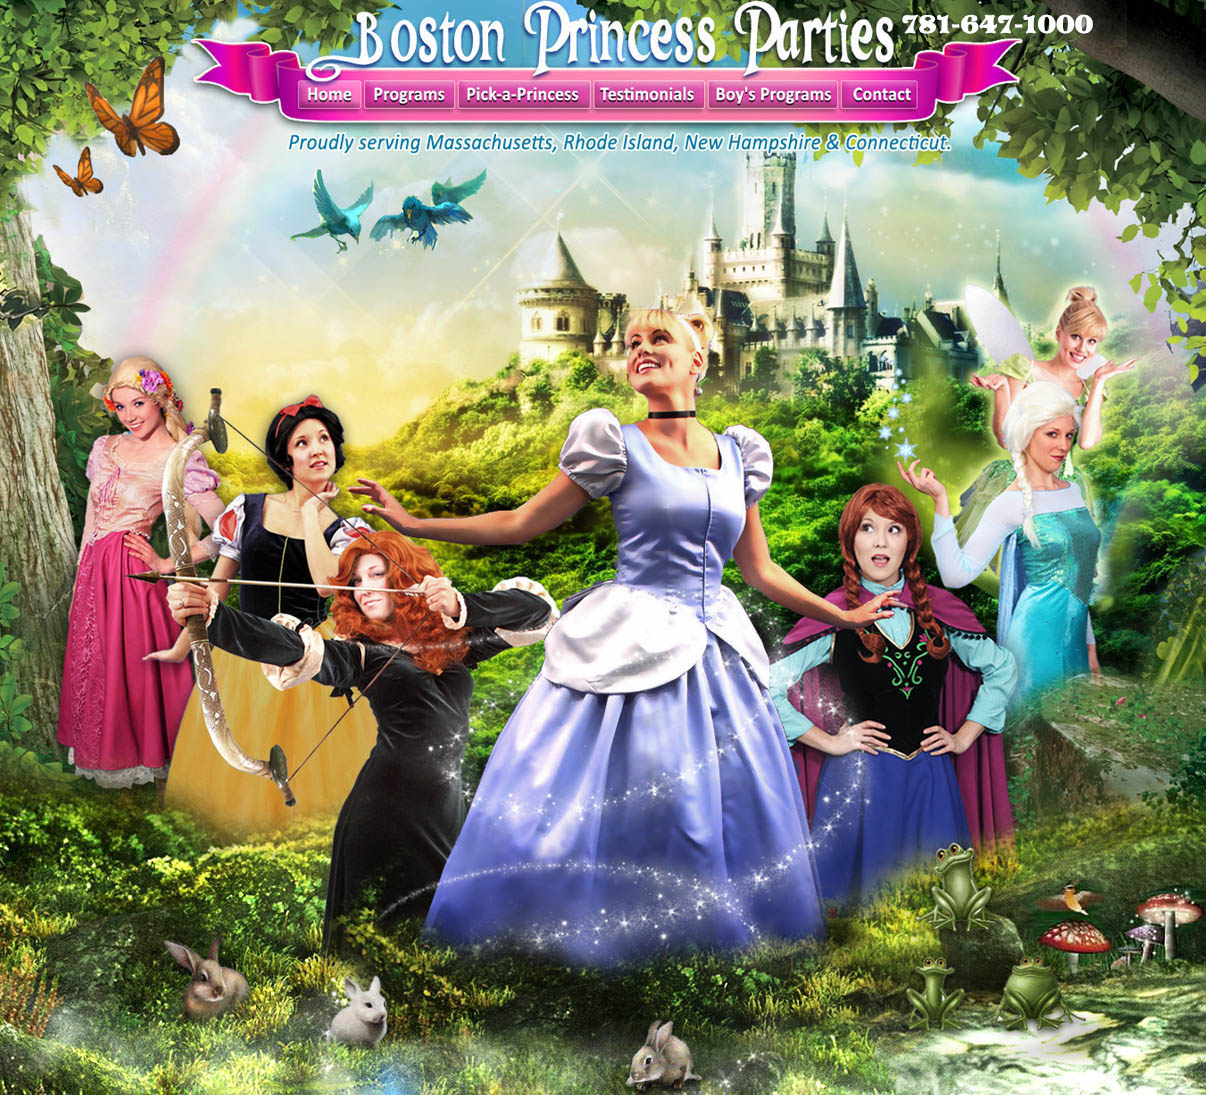 Boston Princess Party, Boston Princess Parties